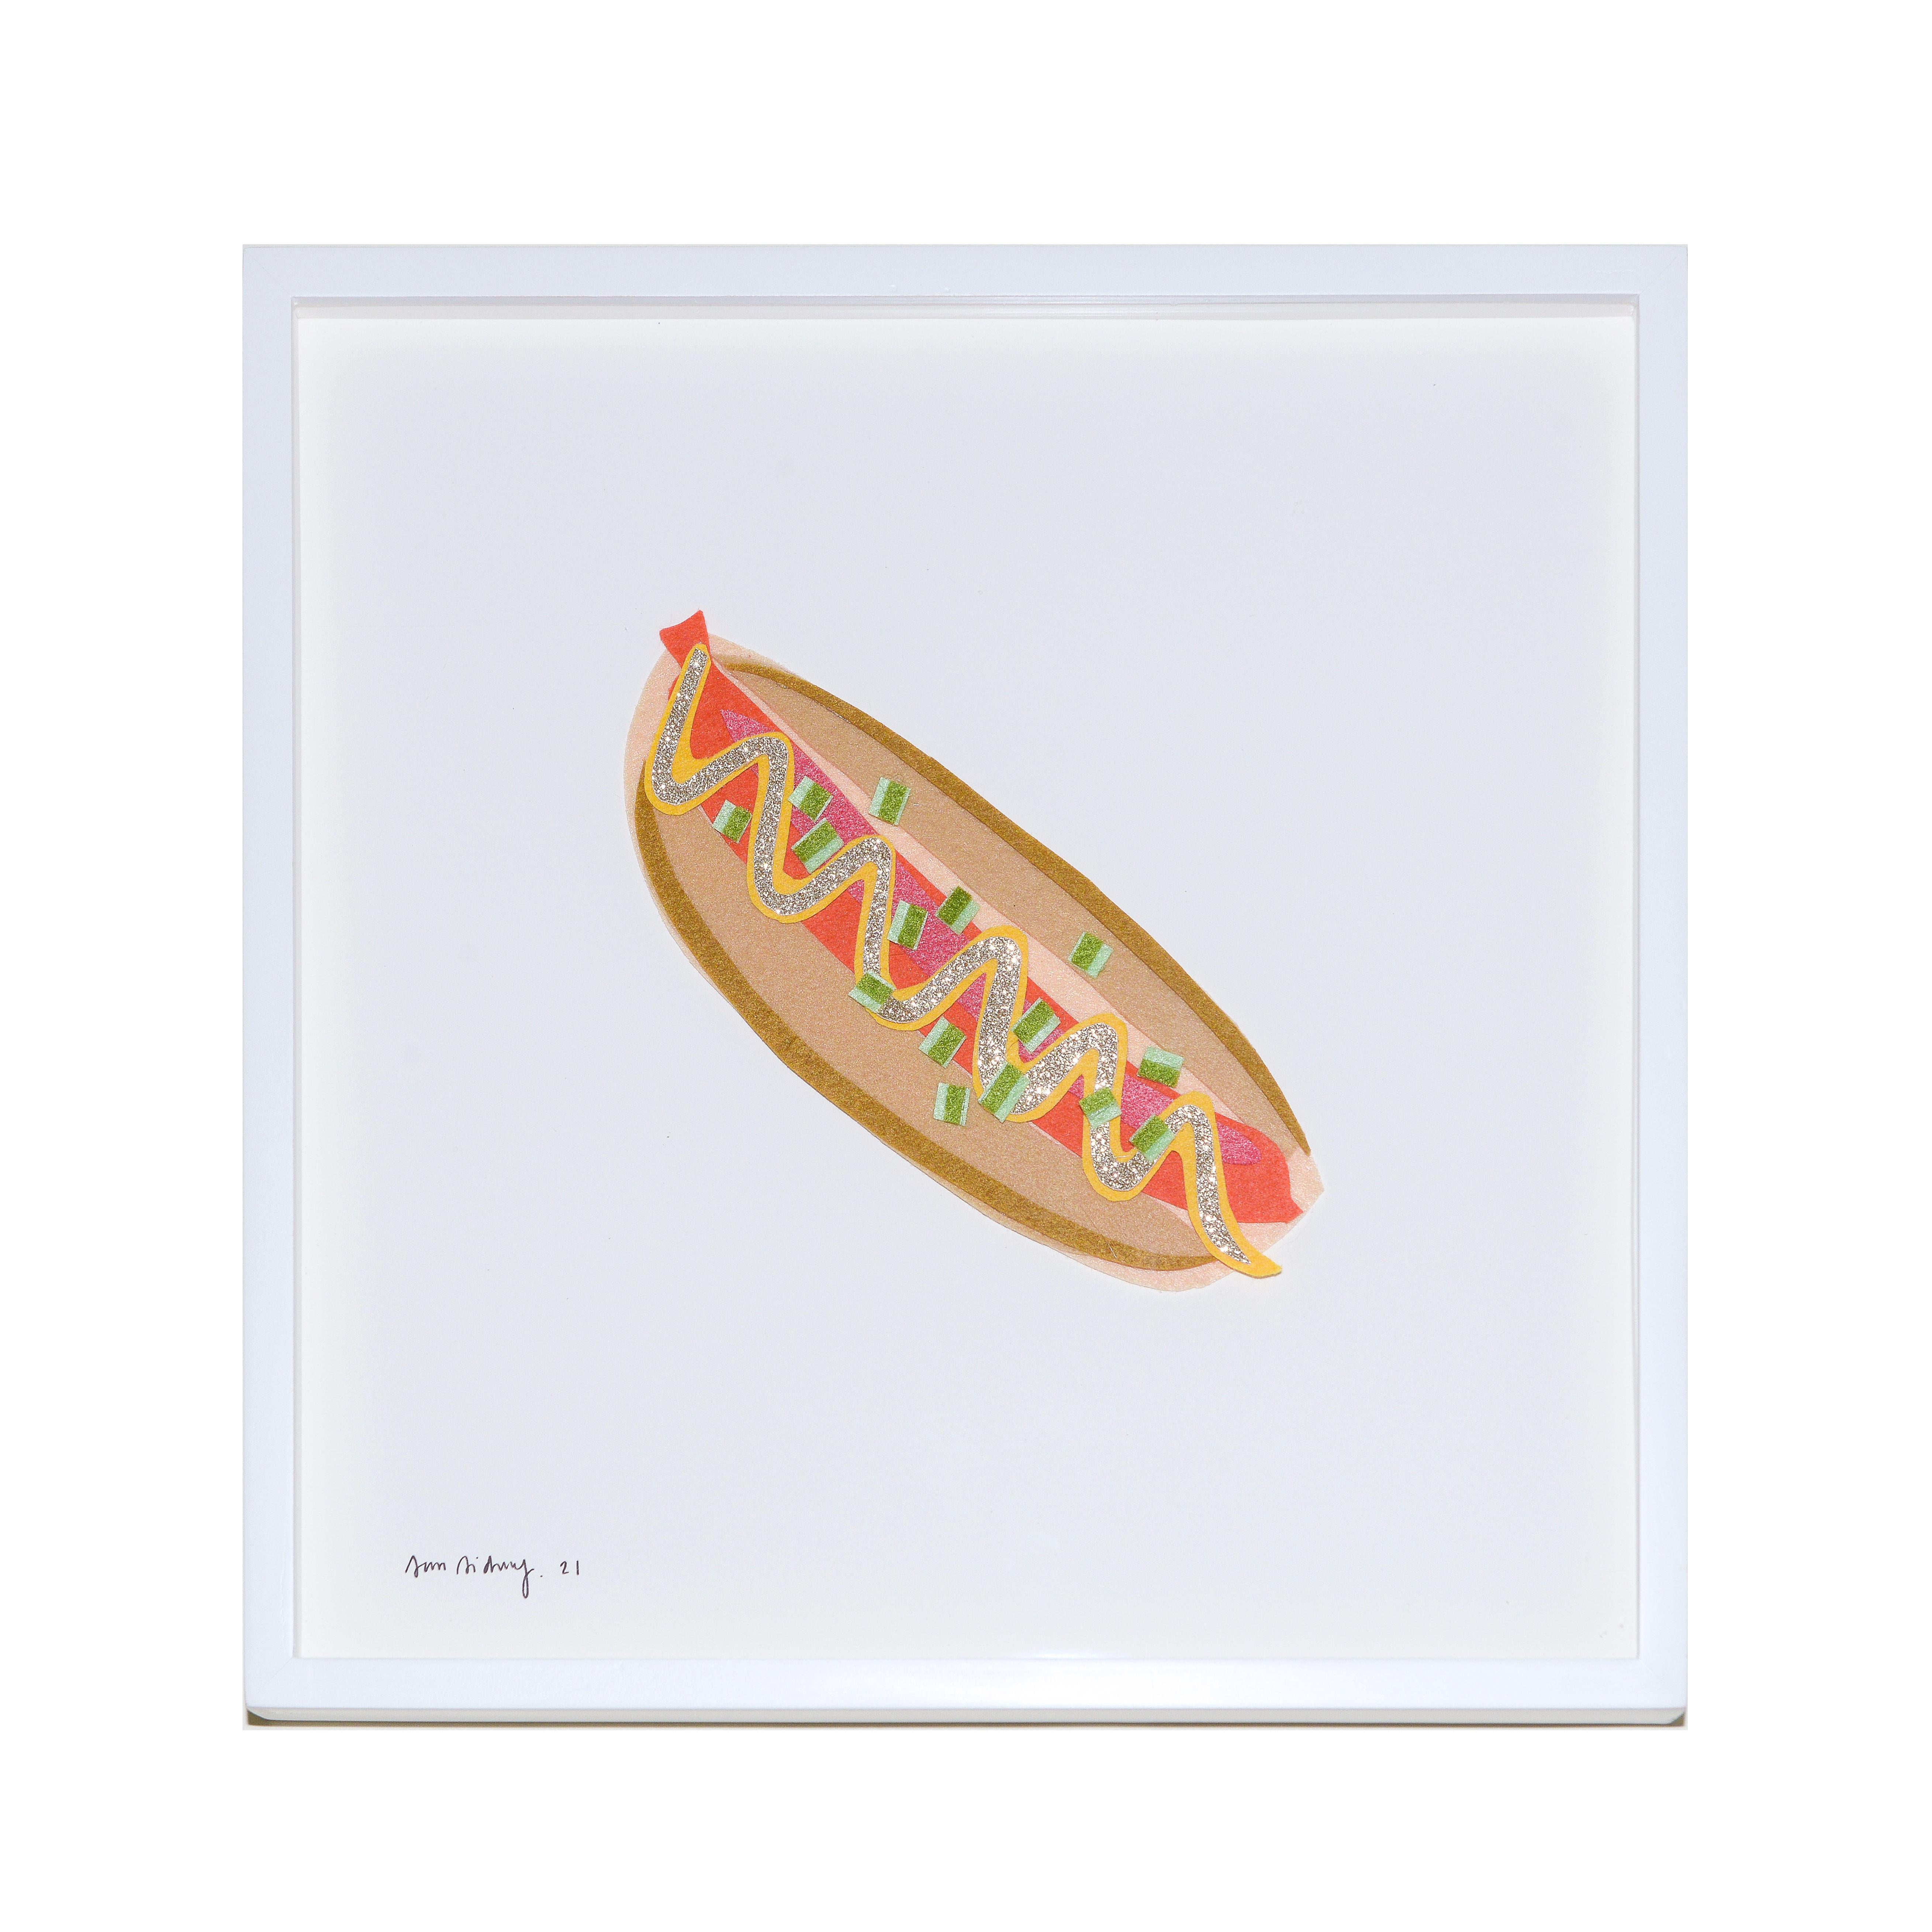 NYC Hotdog - Art by Sam Sidney